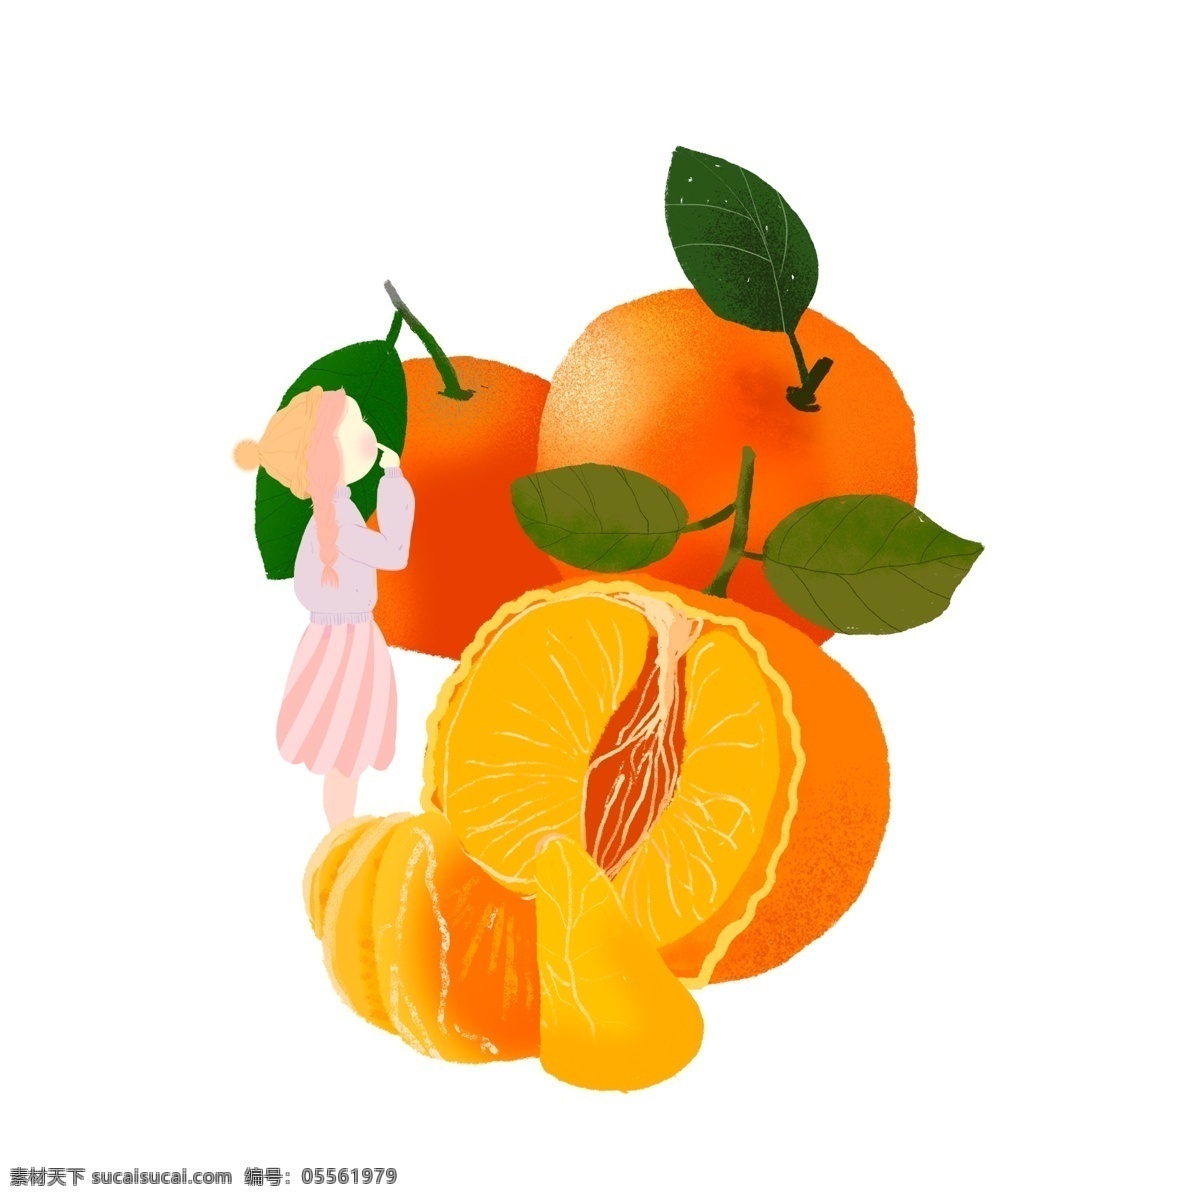 彩绘 女孩 桔子 图案 元素 水果背景 装饰图案 创意元素 水果 大吉大利 水果元素 元素设计 手绘元素 psd元素